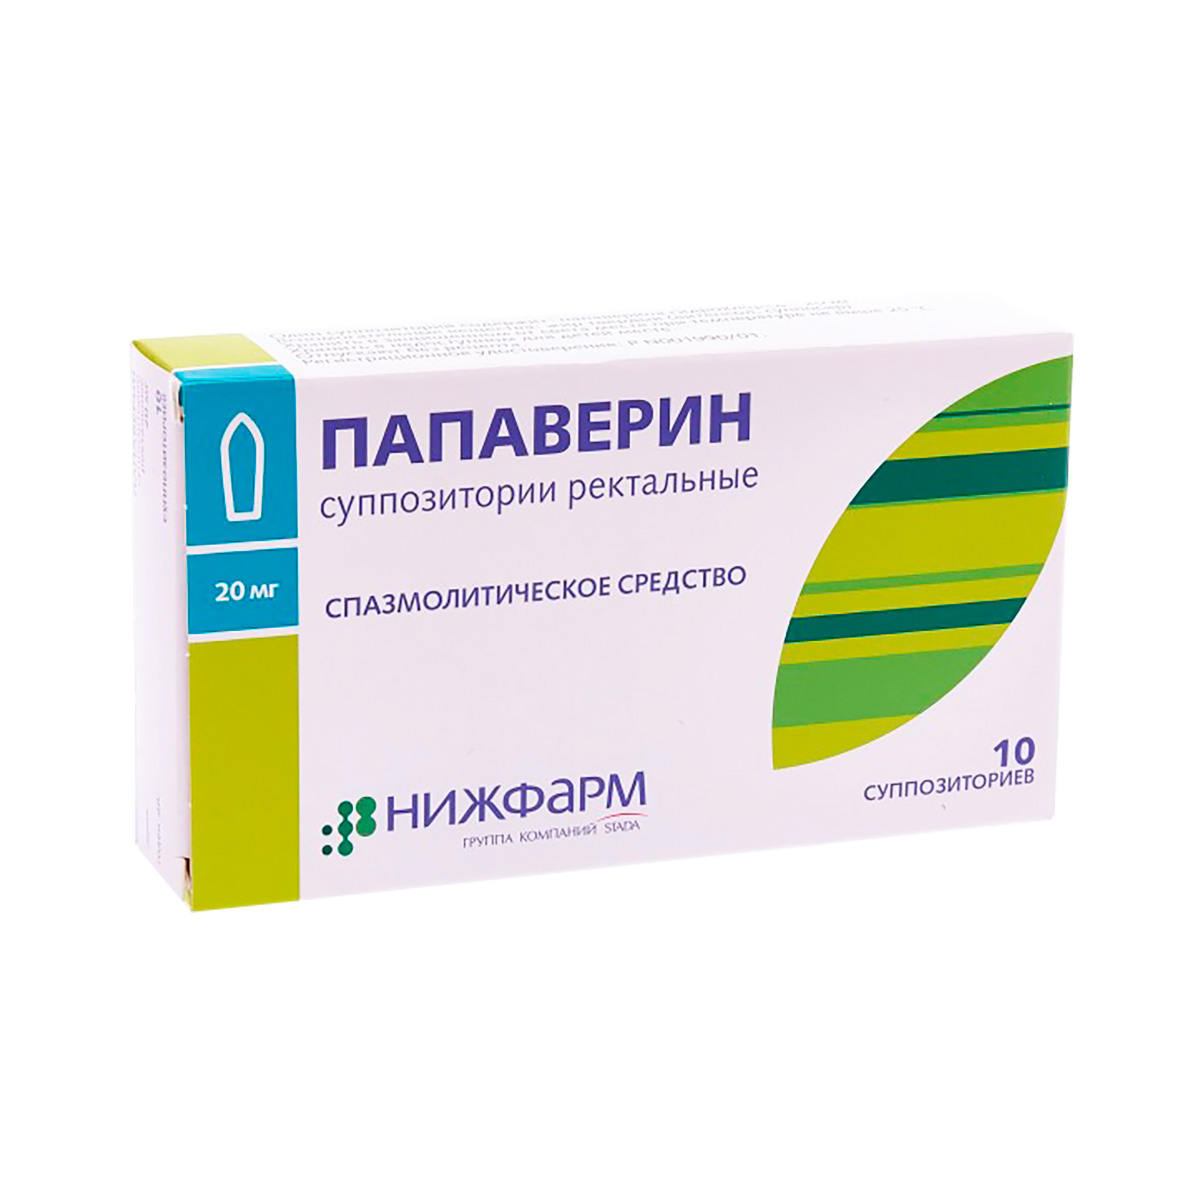 Папаверин 20 мг суппозитории ректальные 10 шт